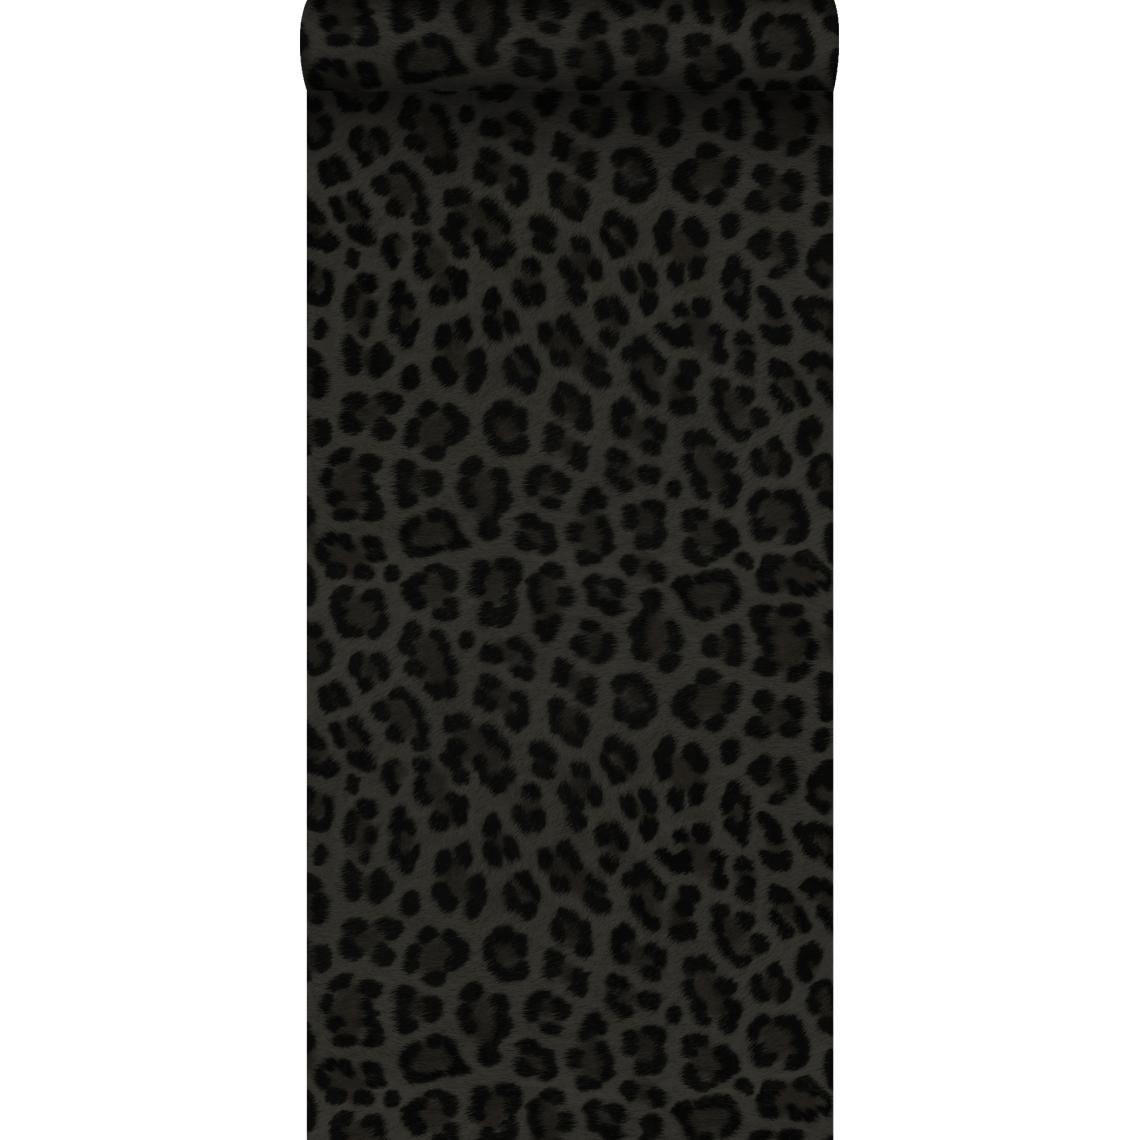 Origin - Origin papier peint peau de léopard gris foncé et noir - 347803 - 0.53 x 10.05 m - Papier peint